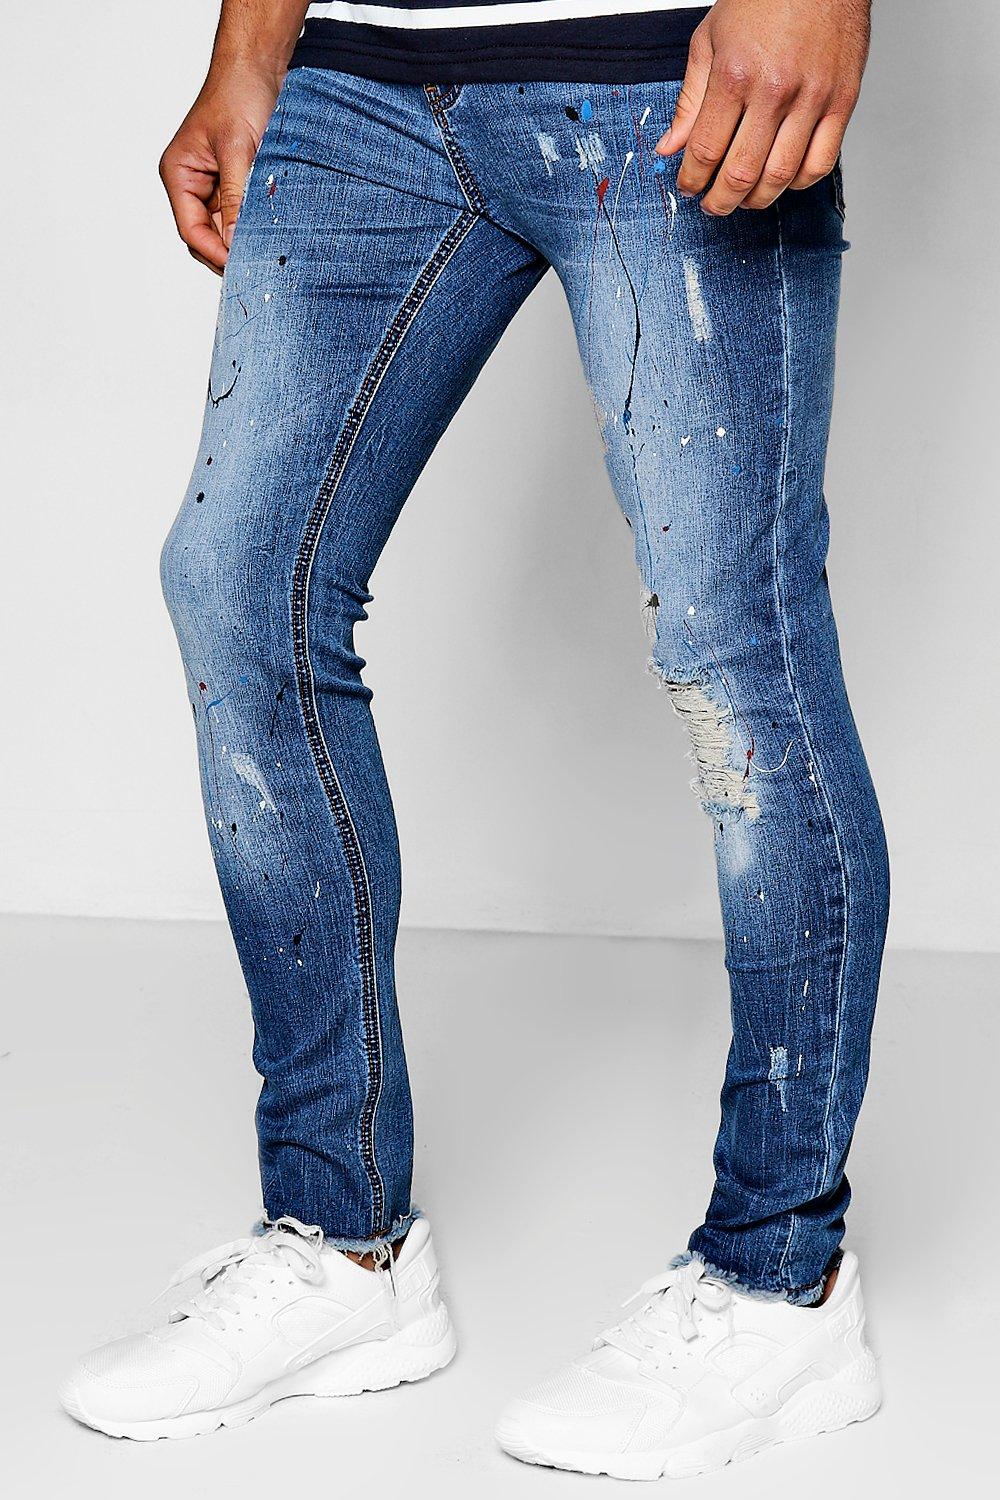 mens skinny paint splatter jeans